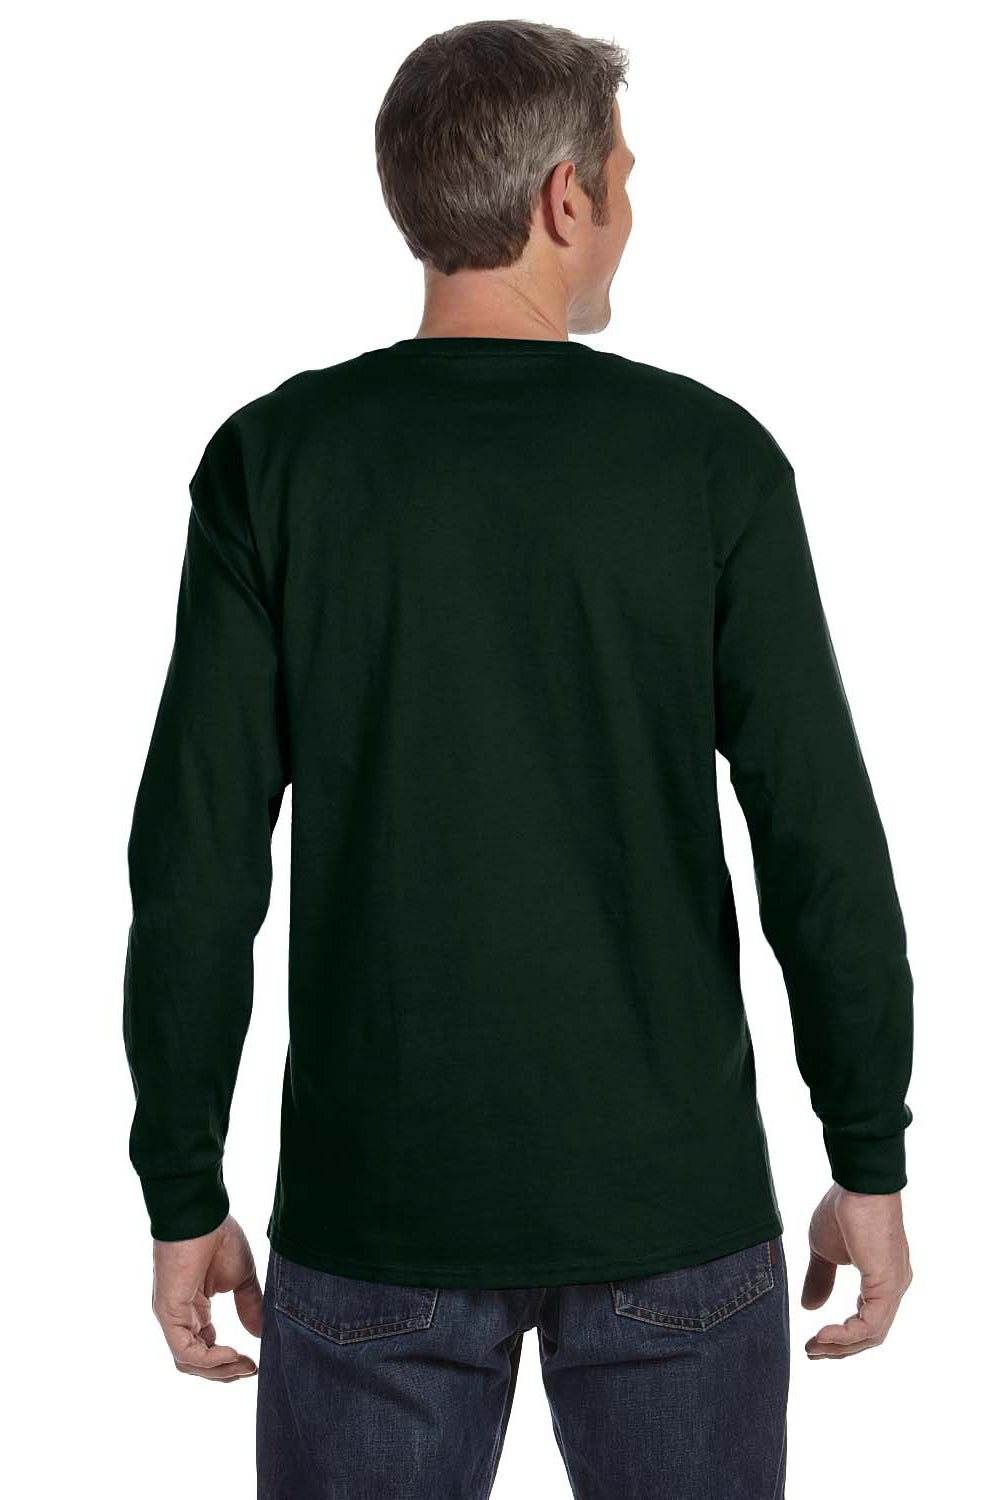 Gildan G540 Mens Long Sleeve Crewneck T-Shirt Forest Green Back